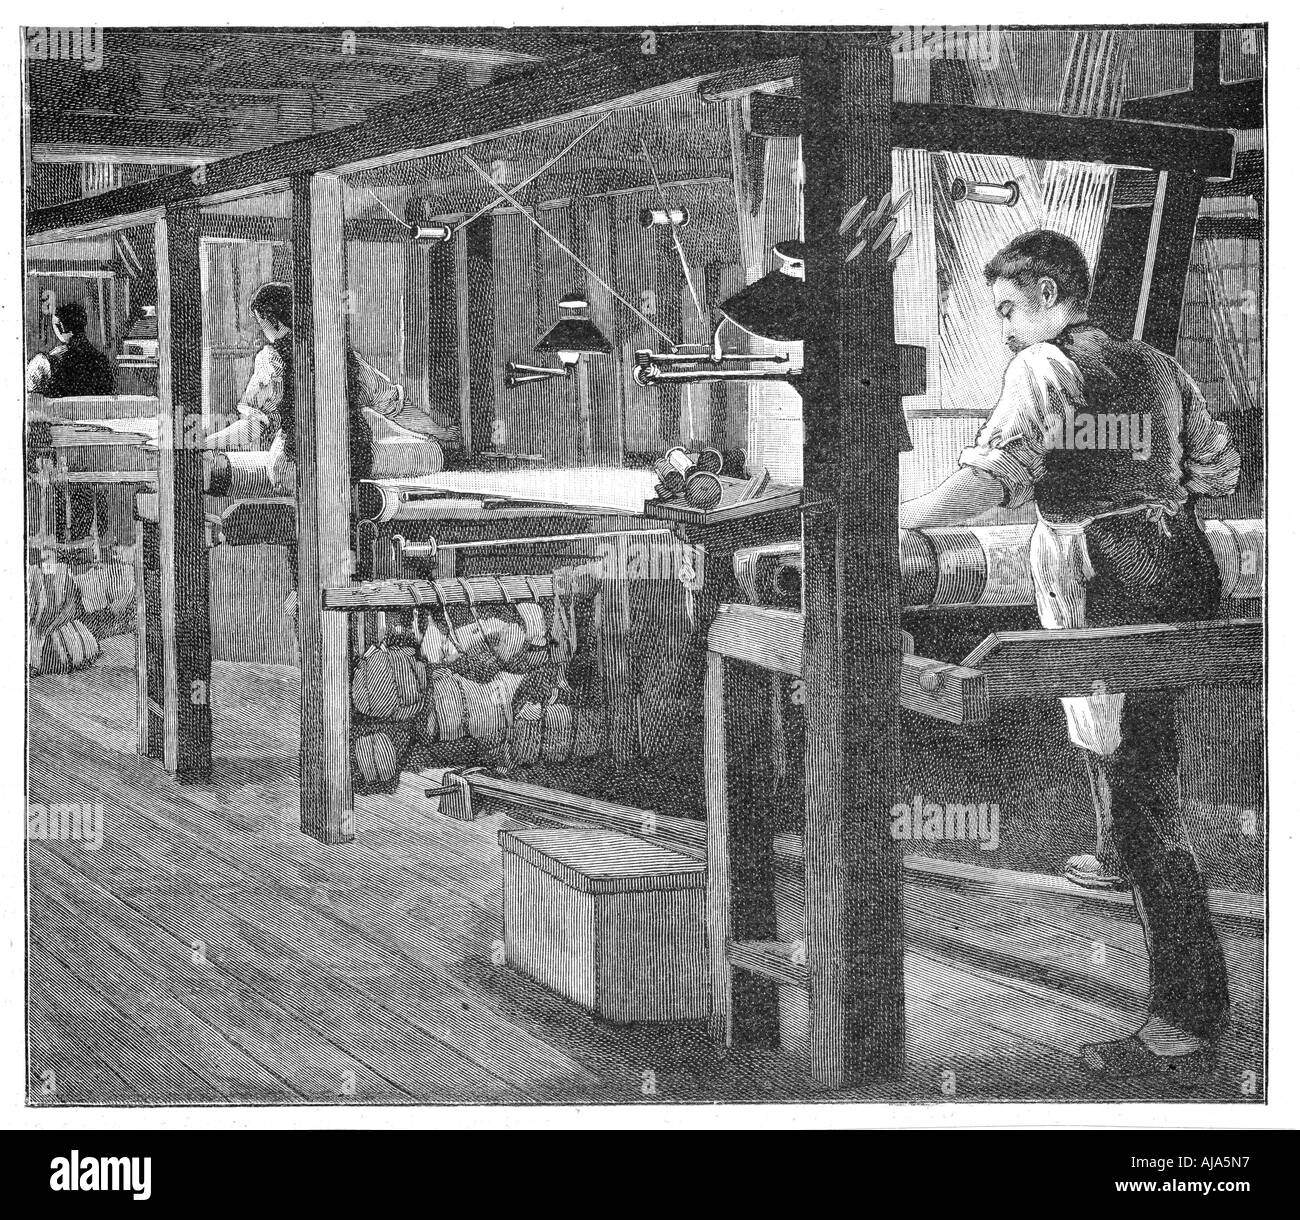 Spitalfields silk weavers, 1893. Artist: Anon Stock Photo